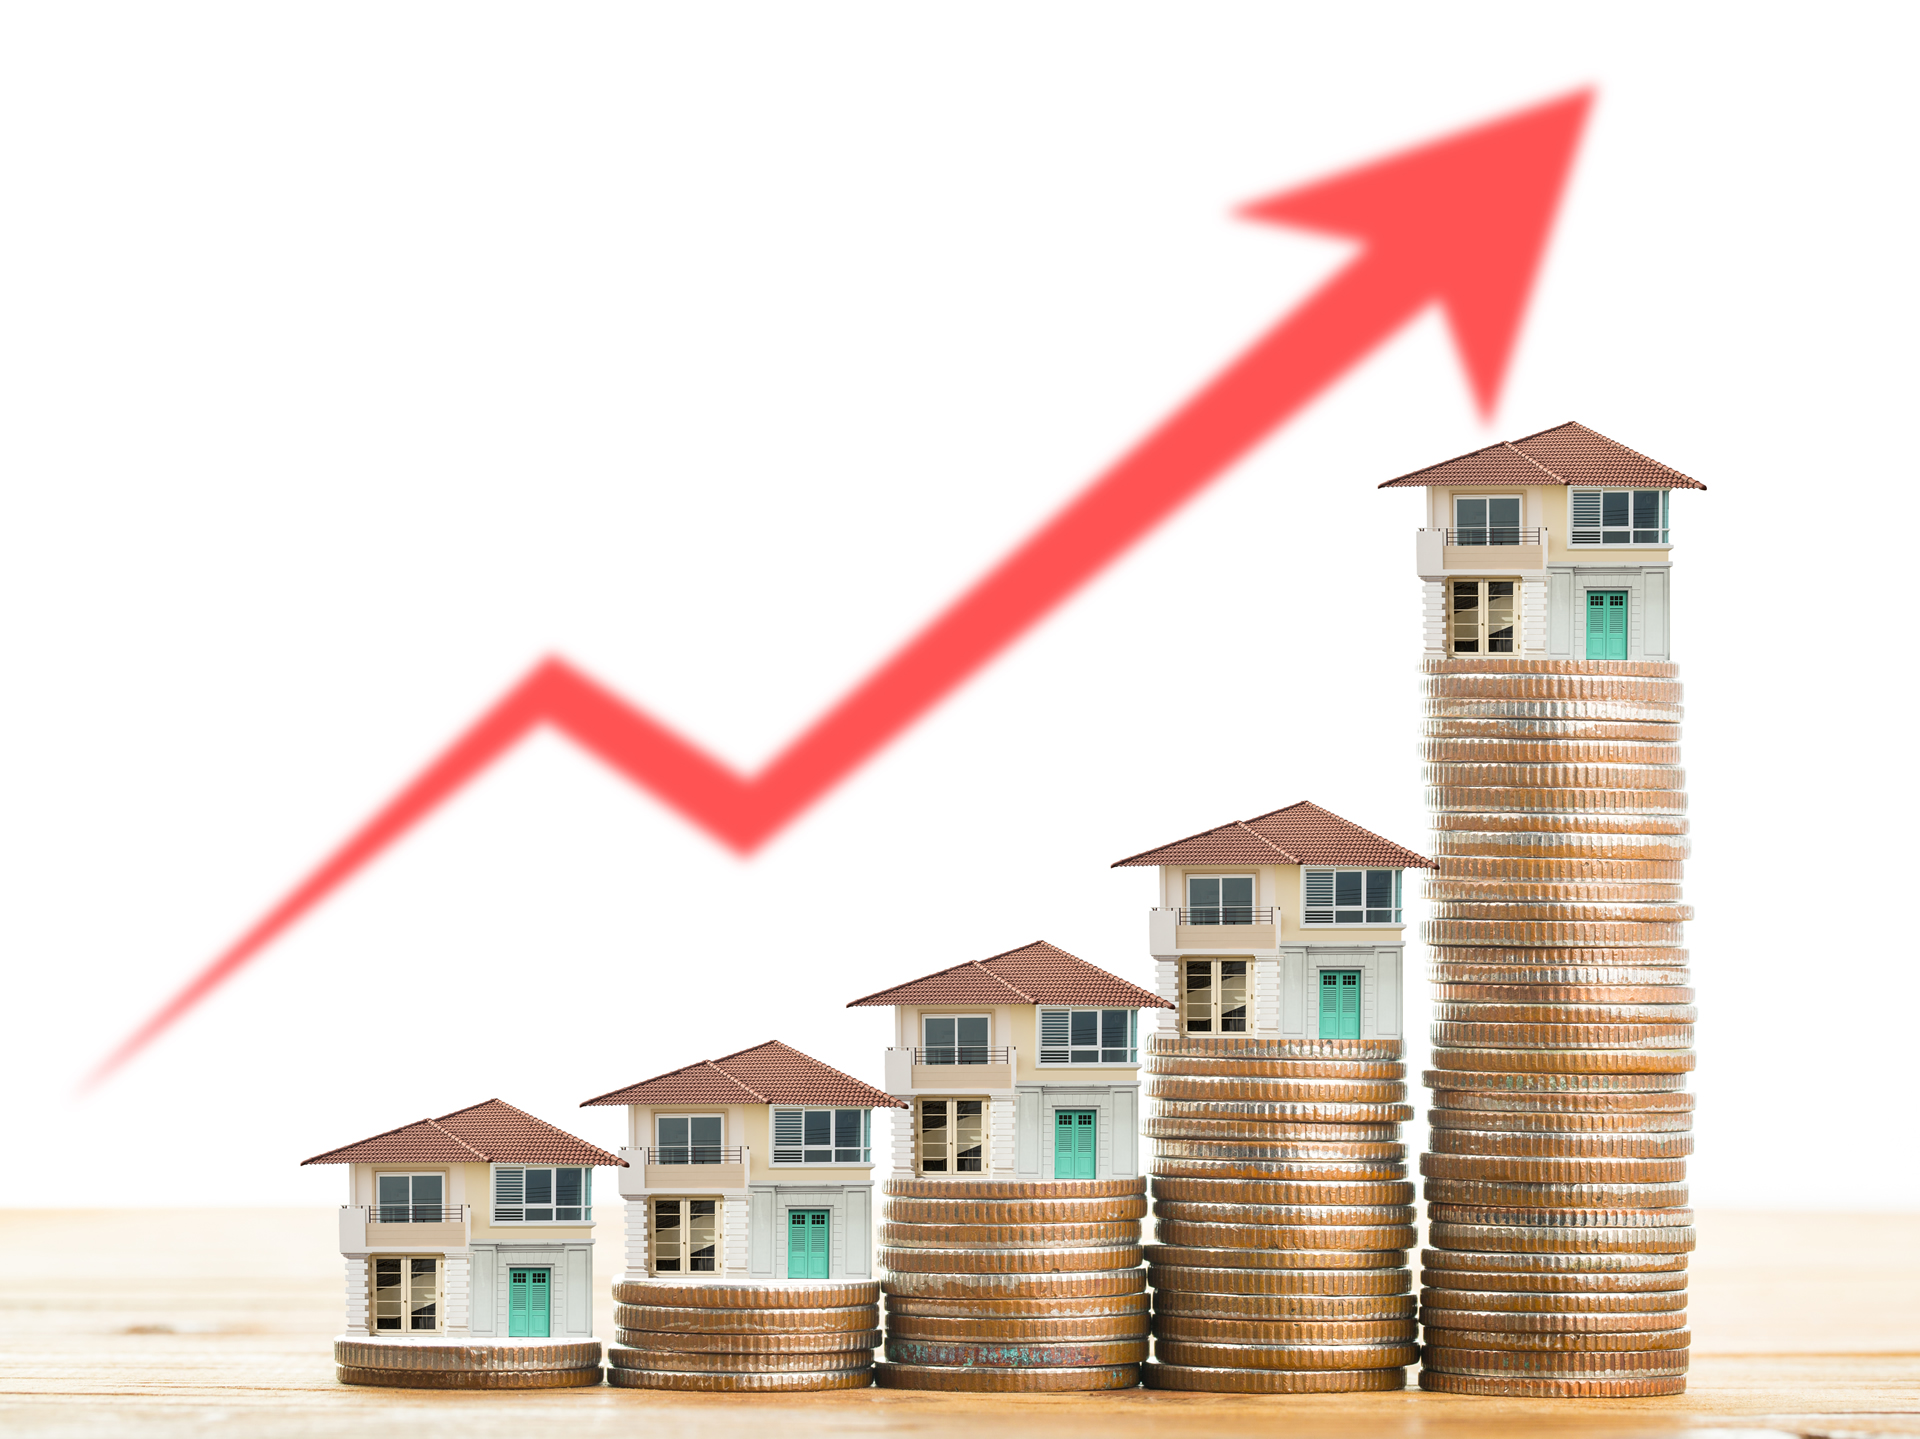  La inversión inmobiliaria alcanza casi los 14.000 millones a cierre...